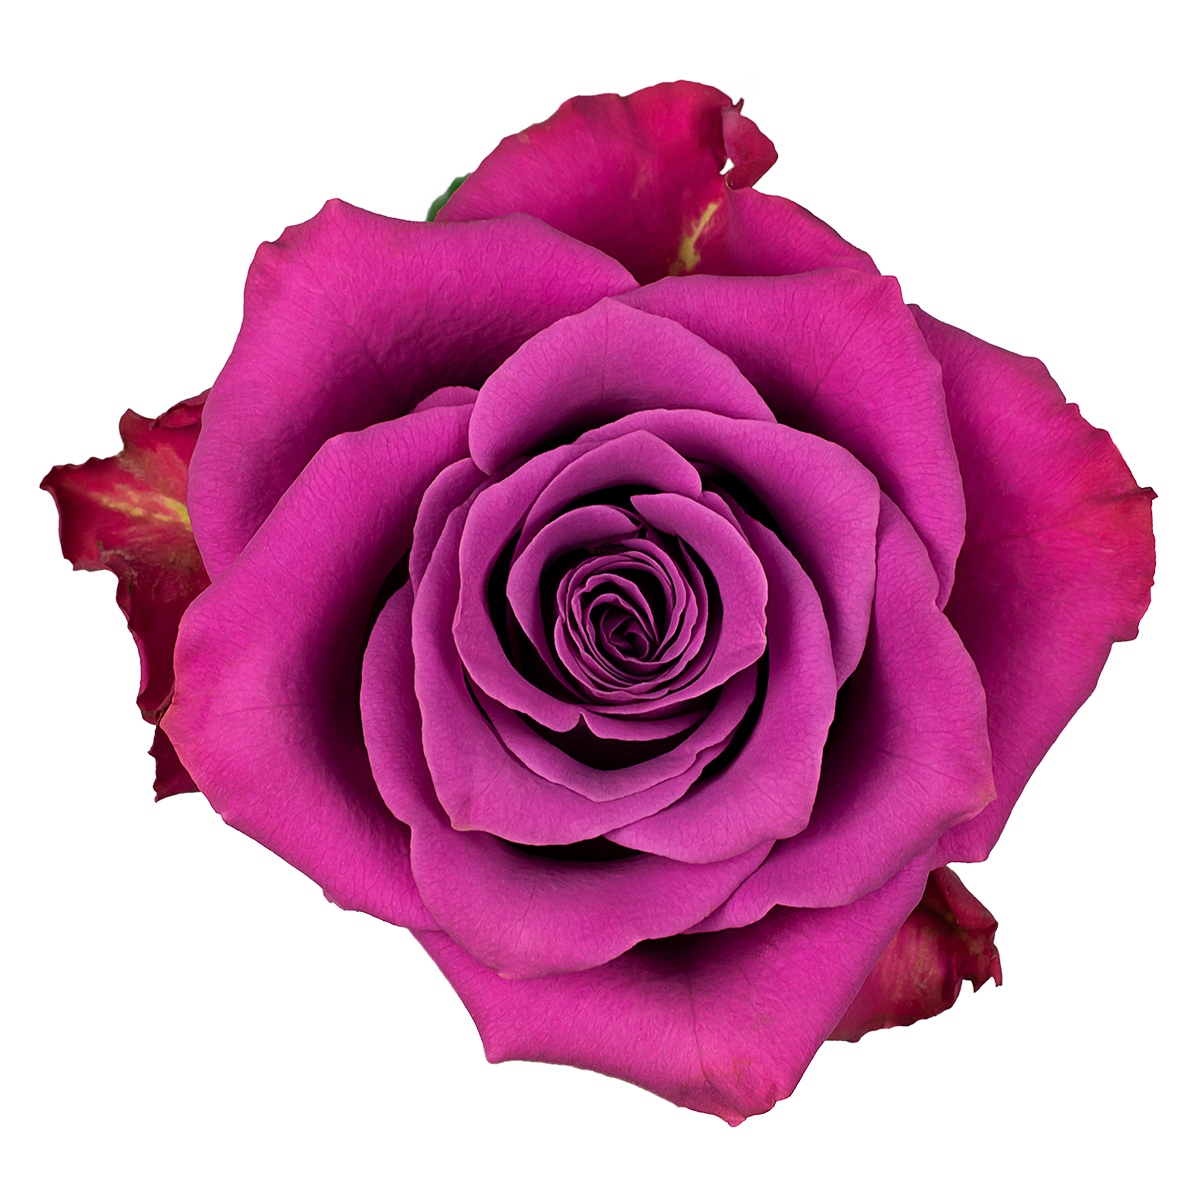 ASCOT rose - Florist Rose Paradise! - Decofresh TOTF2020 on Thursd